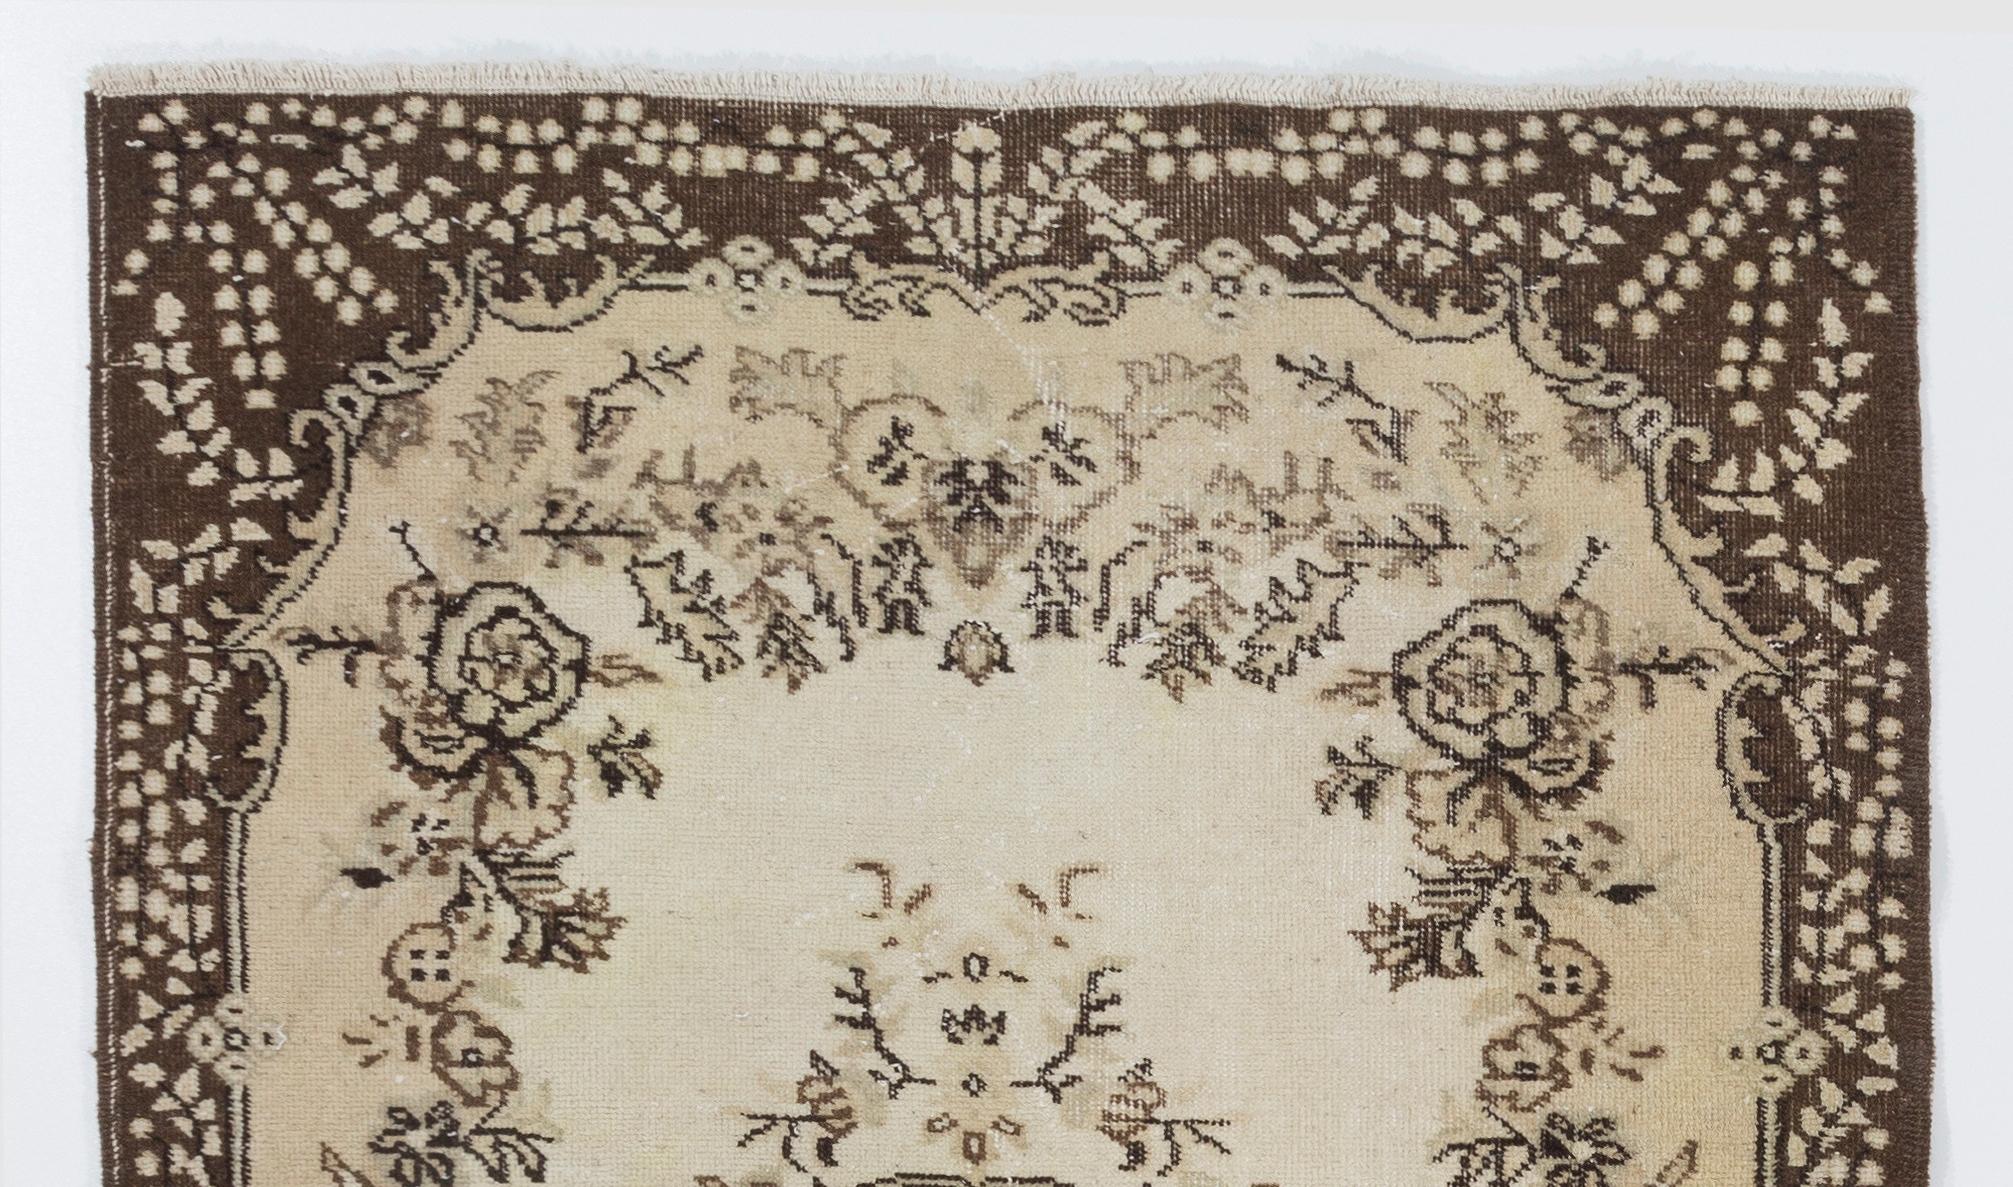 Ein handgeknüpfter türkischer Vintage-Teppich in sanften Farben. Der Teppich zeigt ein florales Medaillonmuster in einem mit Blumenmotiven verzierten Feld. Er hat einen niedrigen, strapazierten Wollflor auf Baumwollbasis, ist in sehr gutem Zustand,